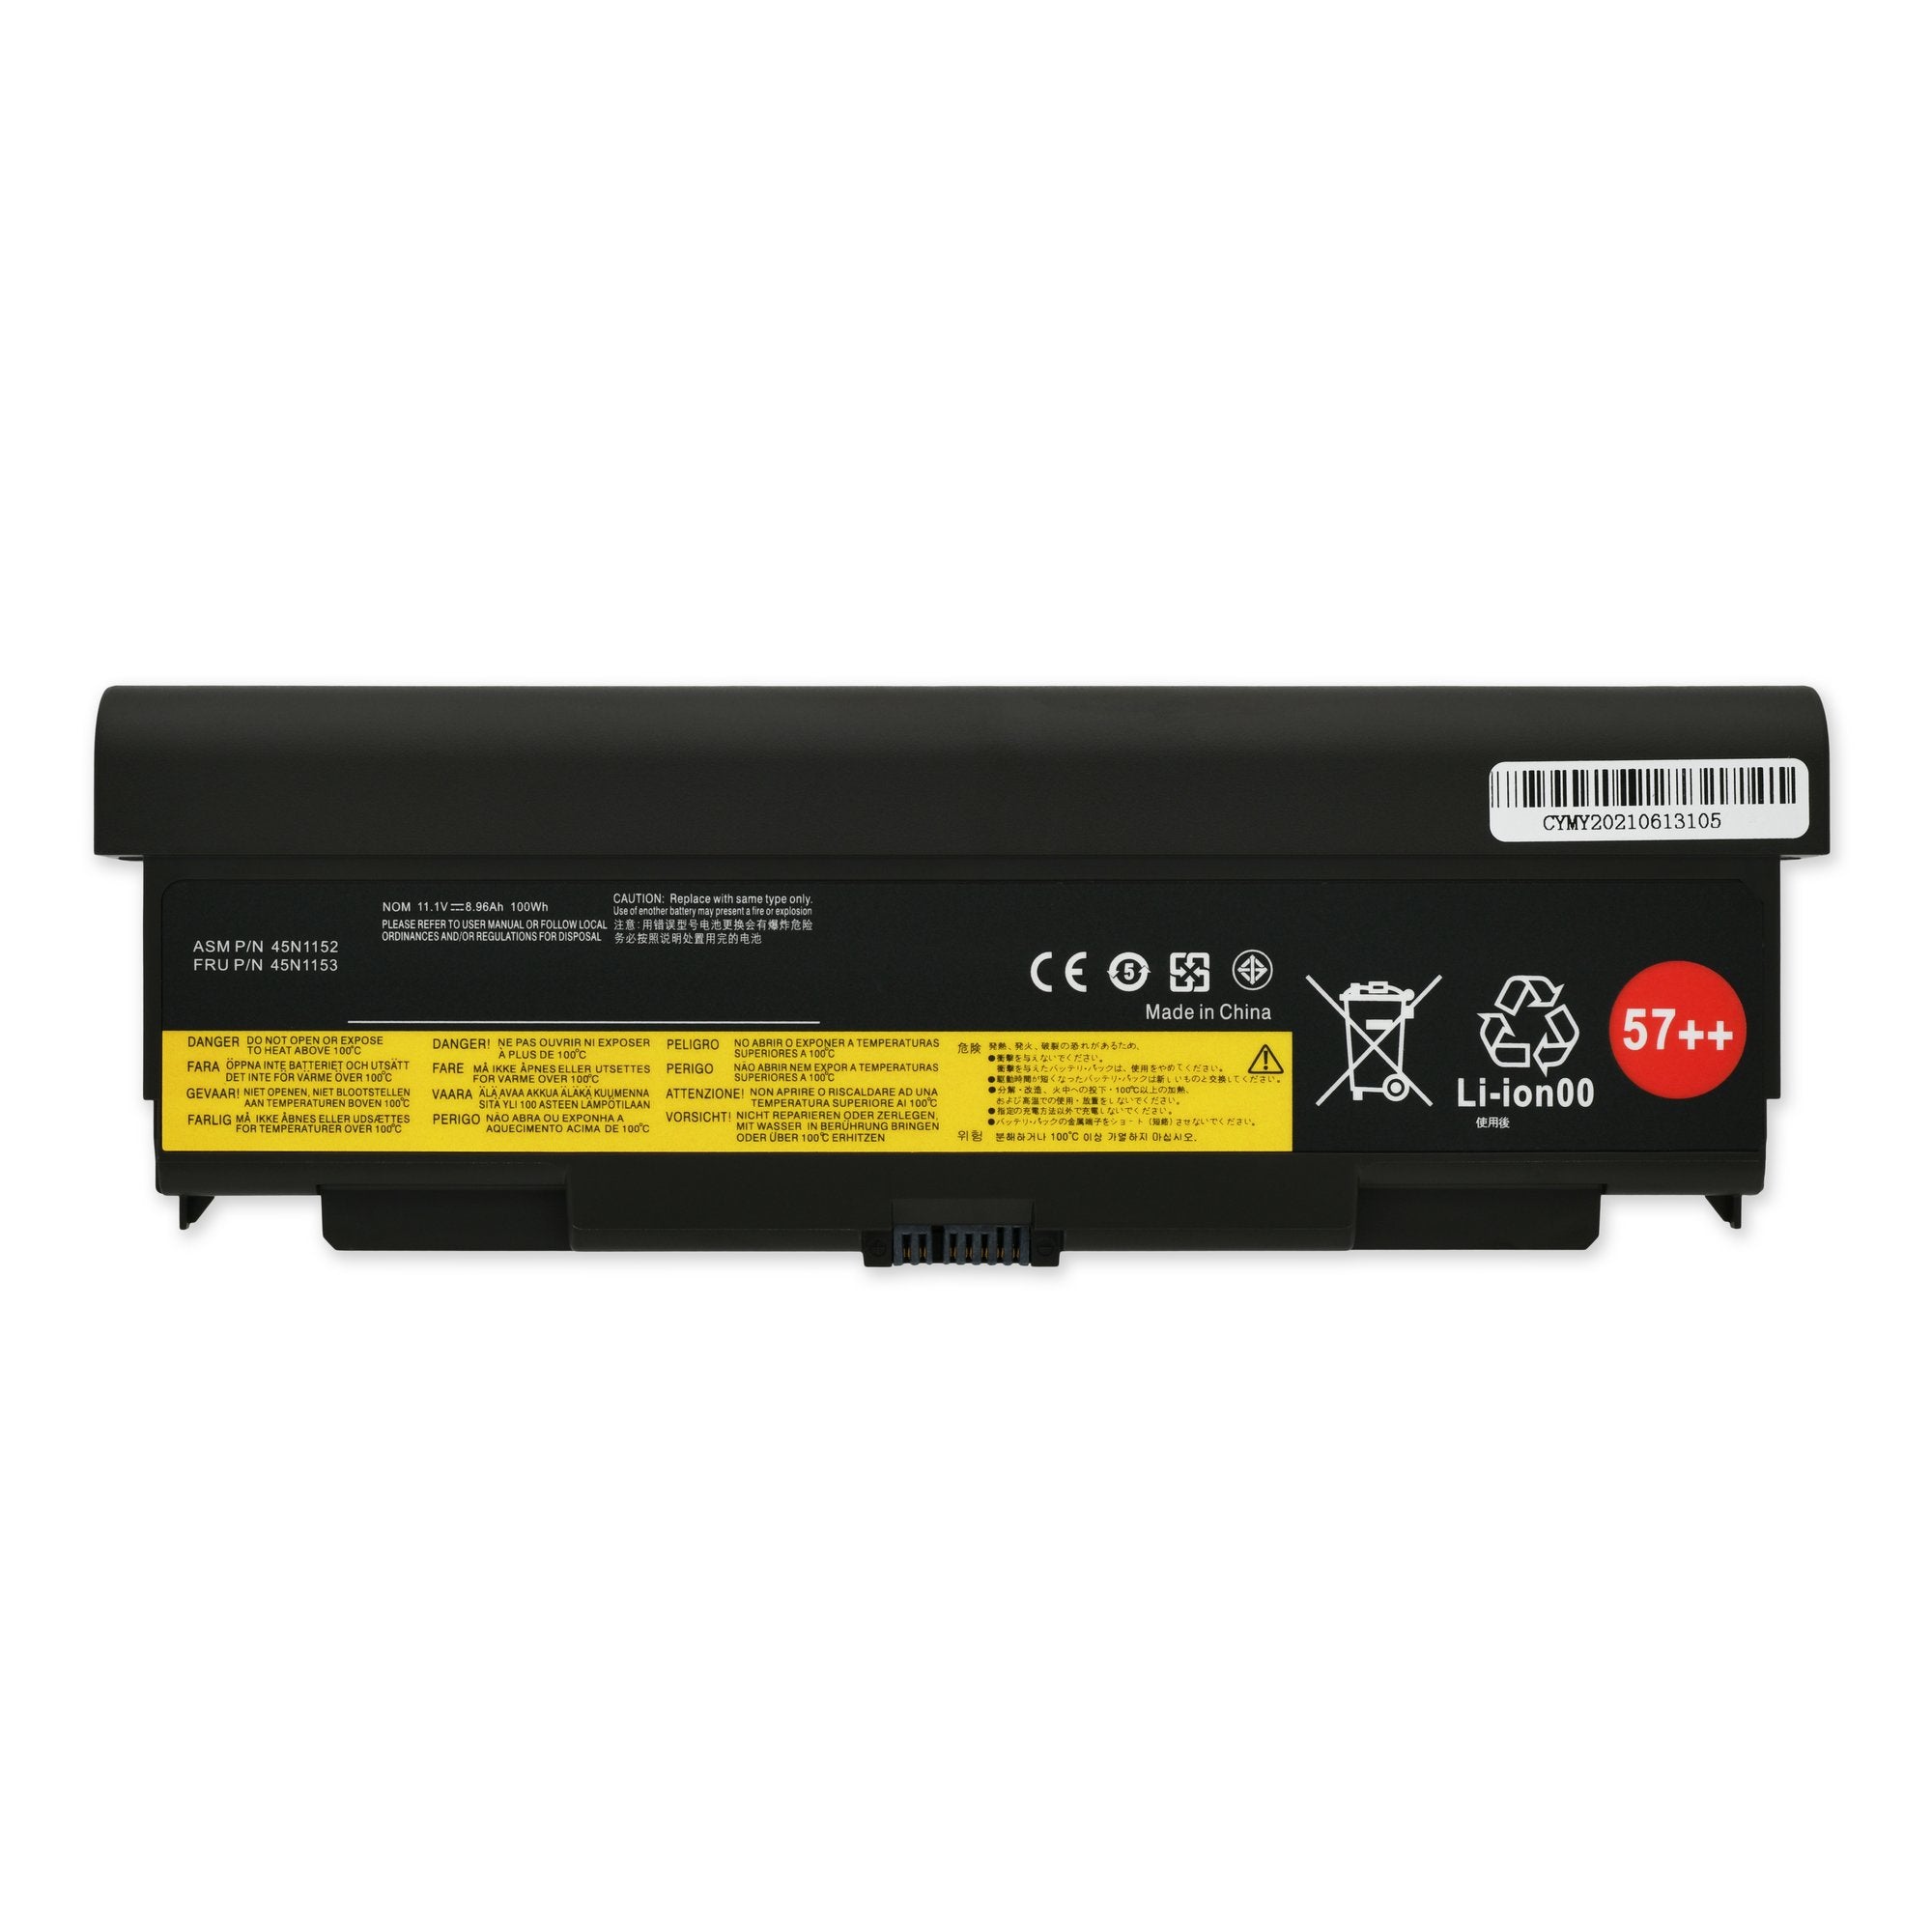 Lenovo 45N1151 Battery New High Capacity